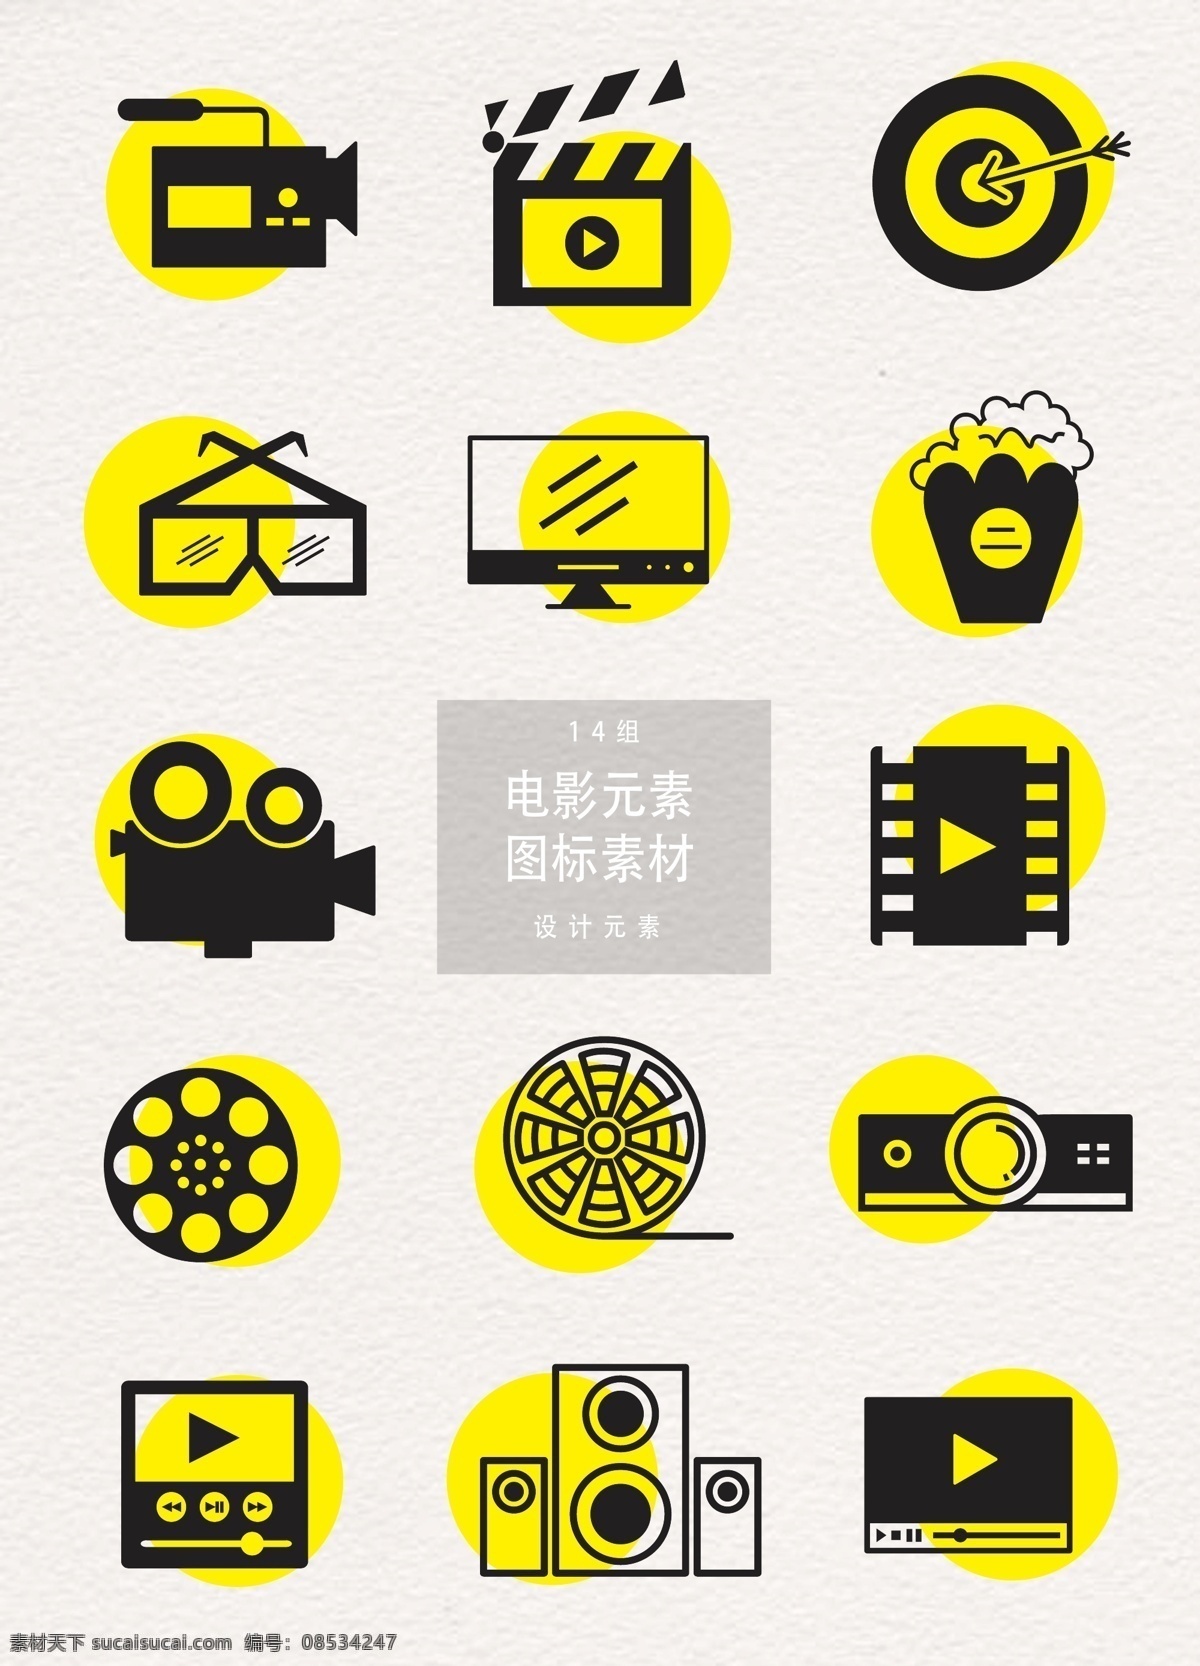 电影 元素 图标 设计元素 爆米花 音响 电影元素 电影图标 图标设计 摄影机 佳片 投影机